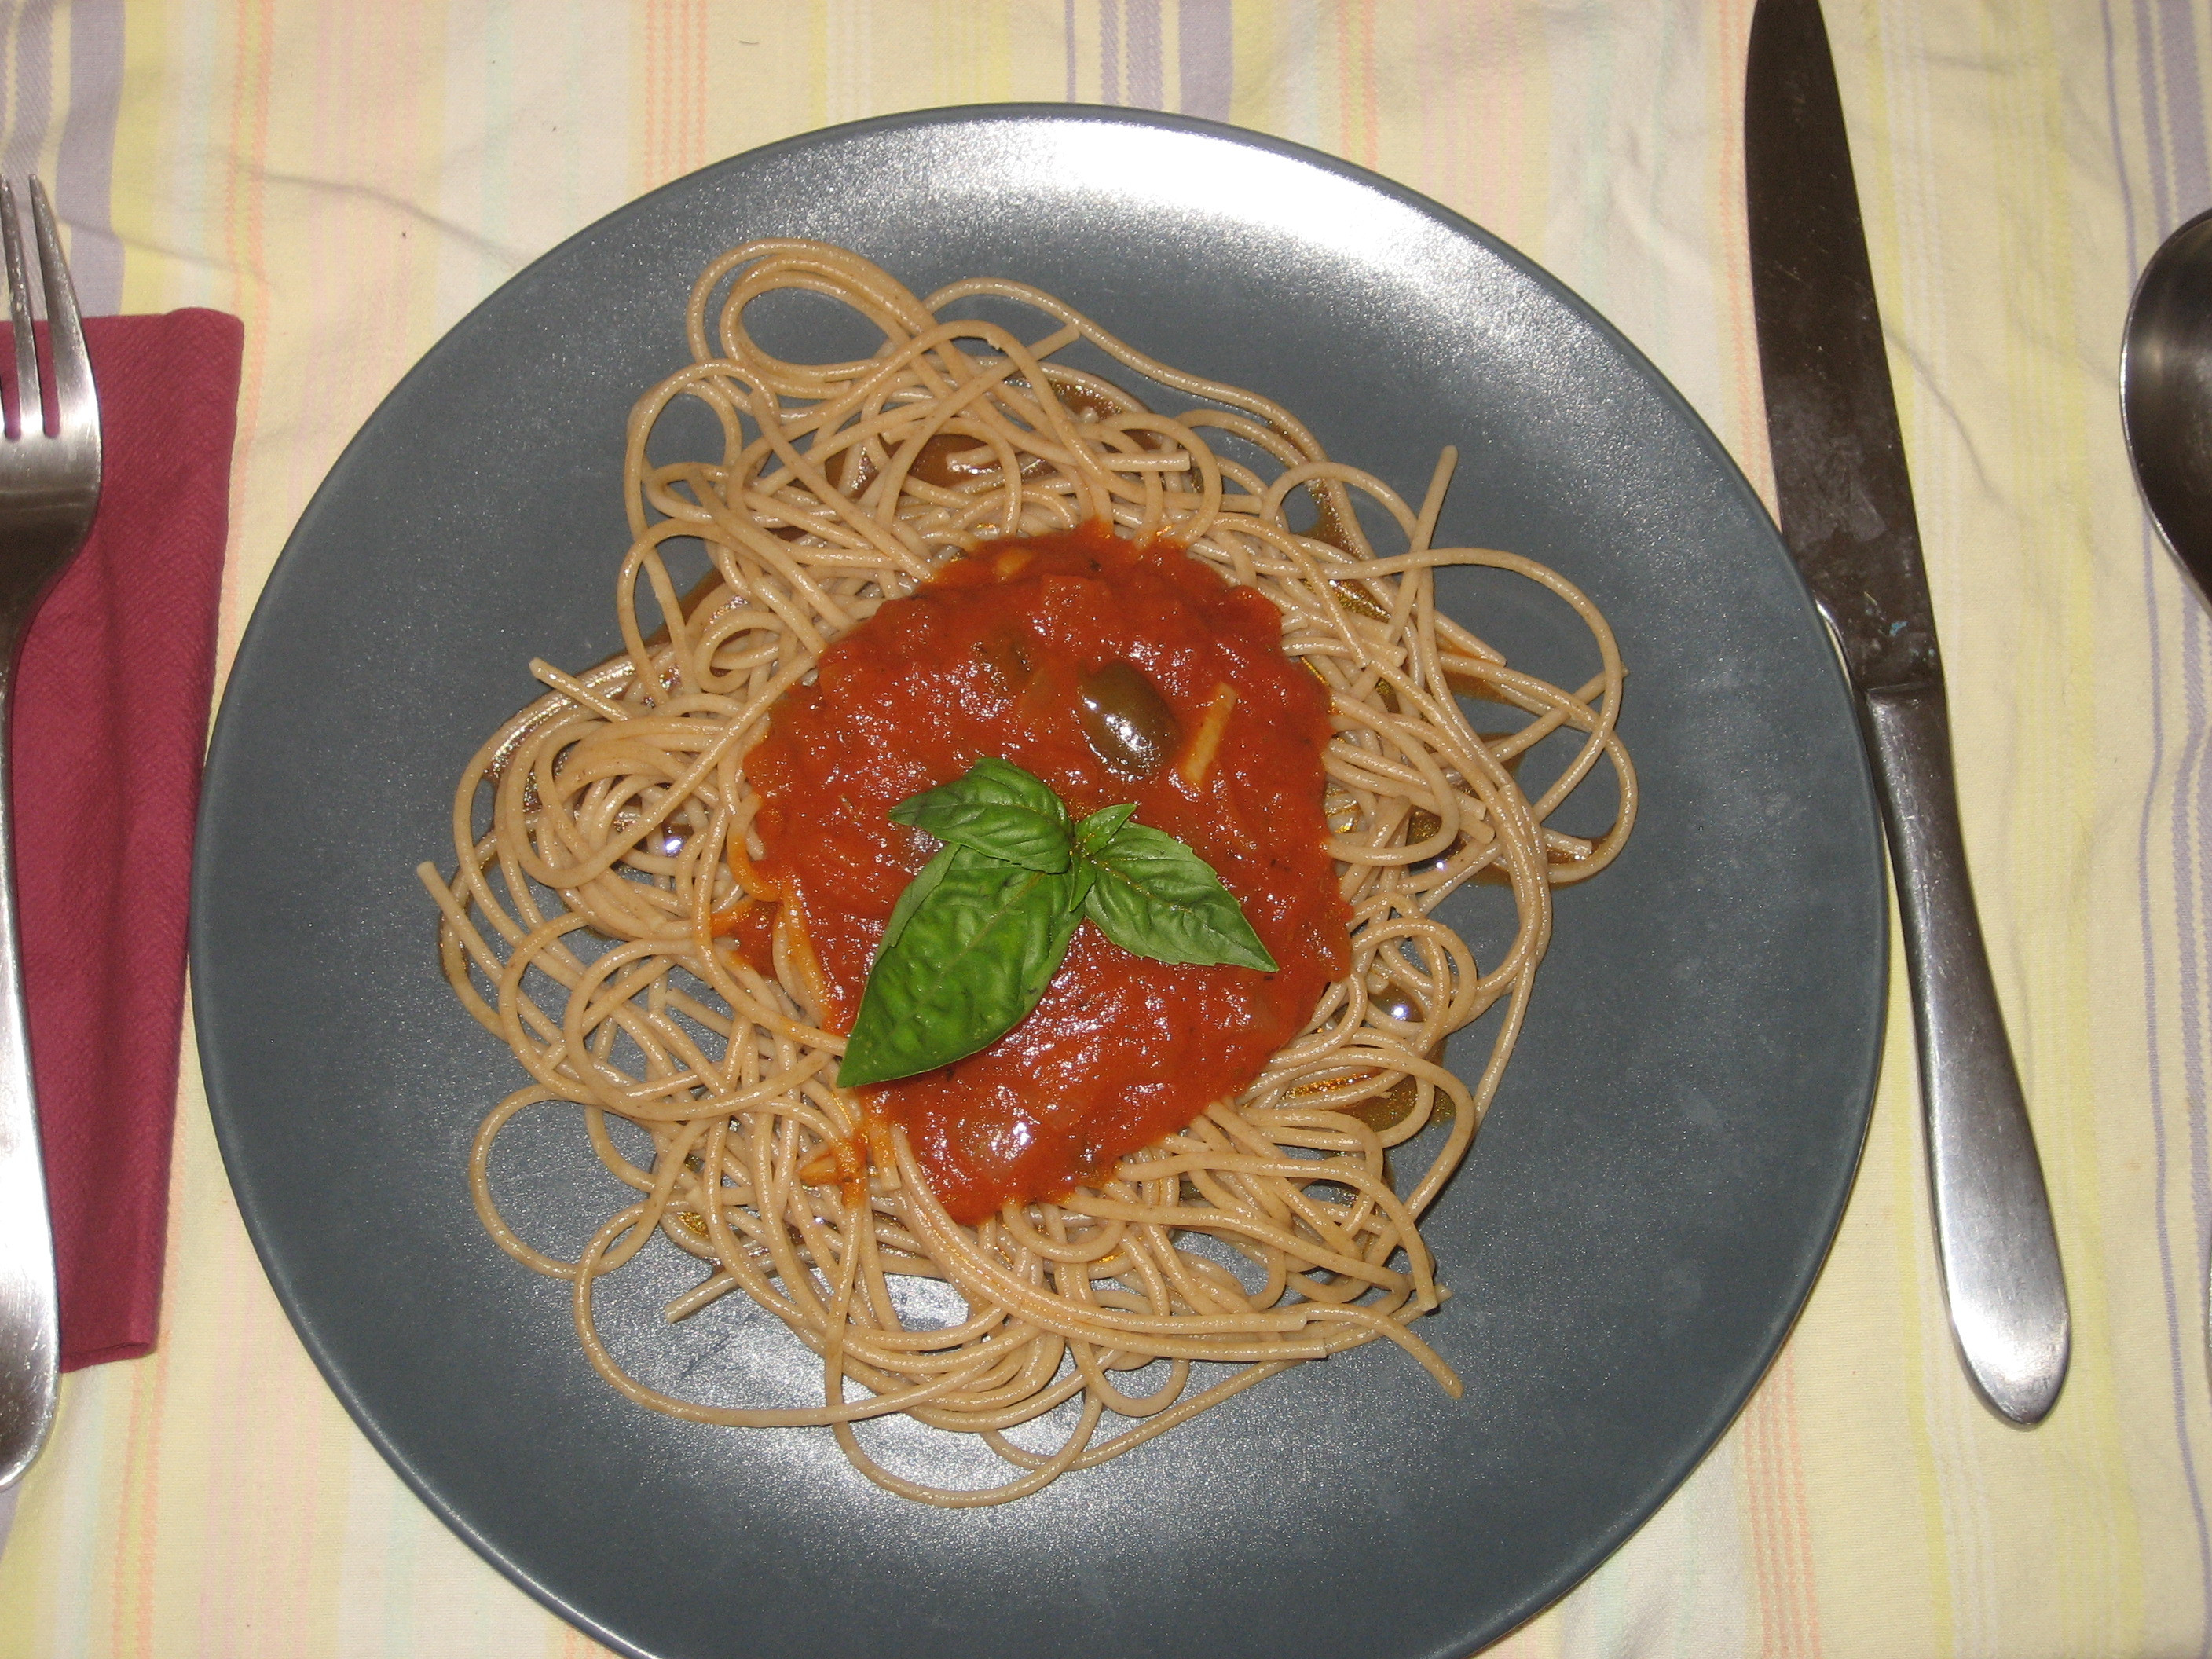 How To Make Spaghetti Sauce With Tomato Paste
 How To Make Your Own Spaghetti Sauce From Tomato Paste